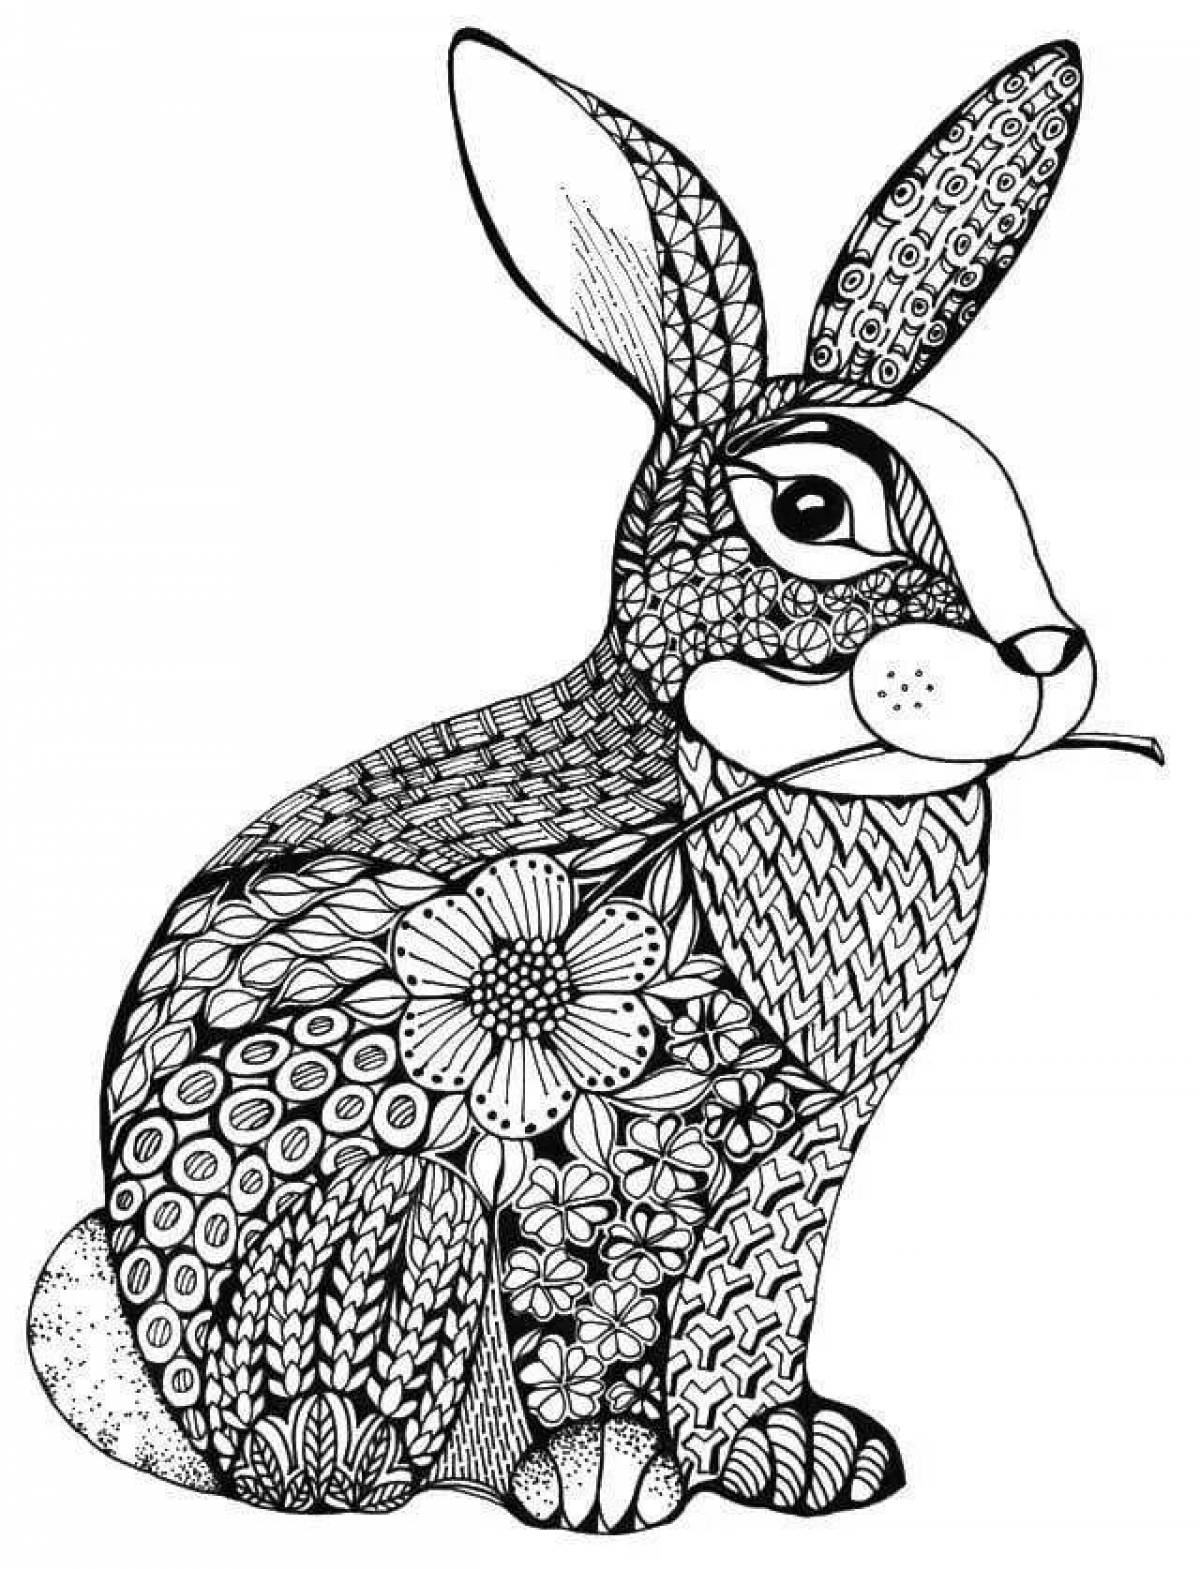 Привлекательная антистрессовая раскраска зайца